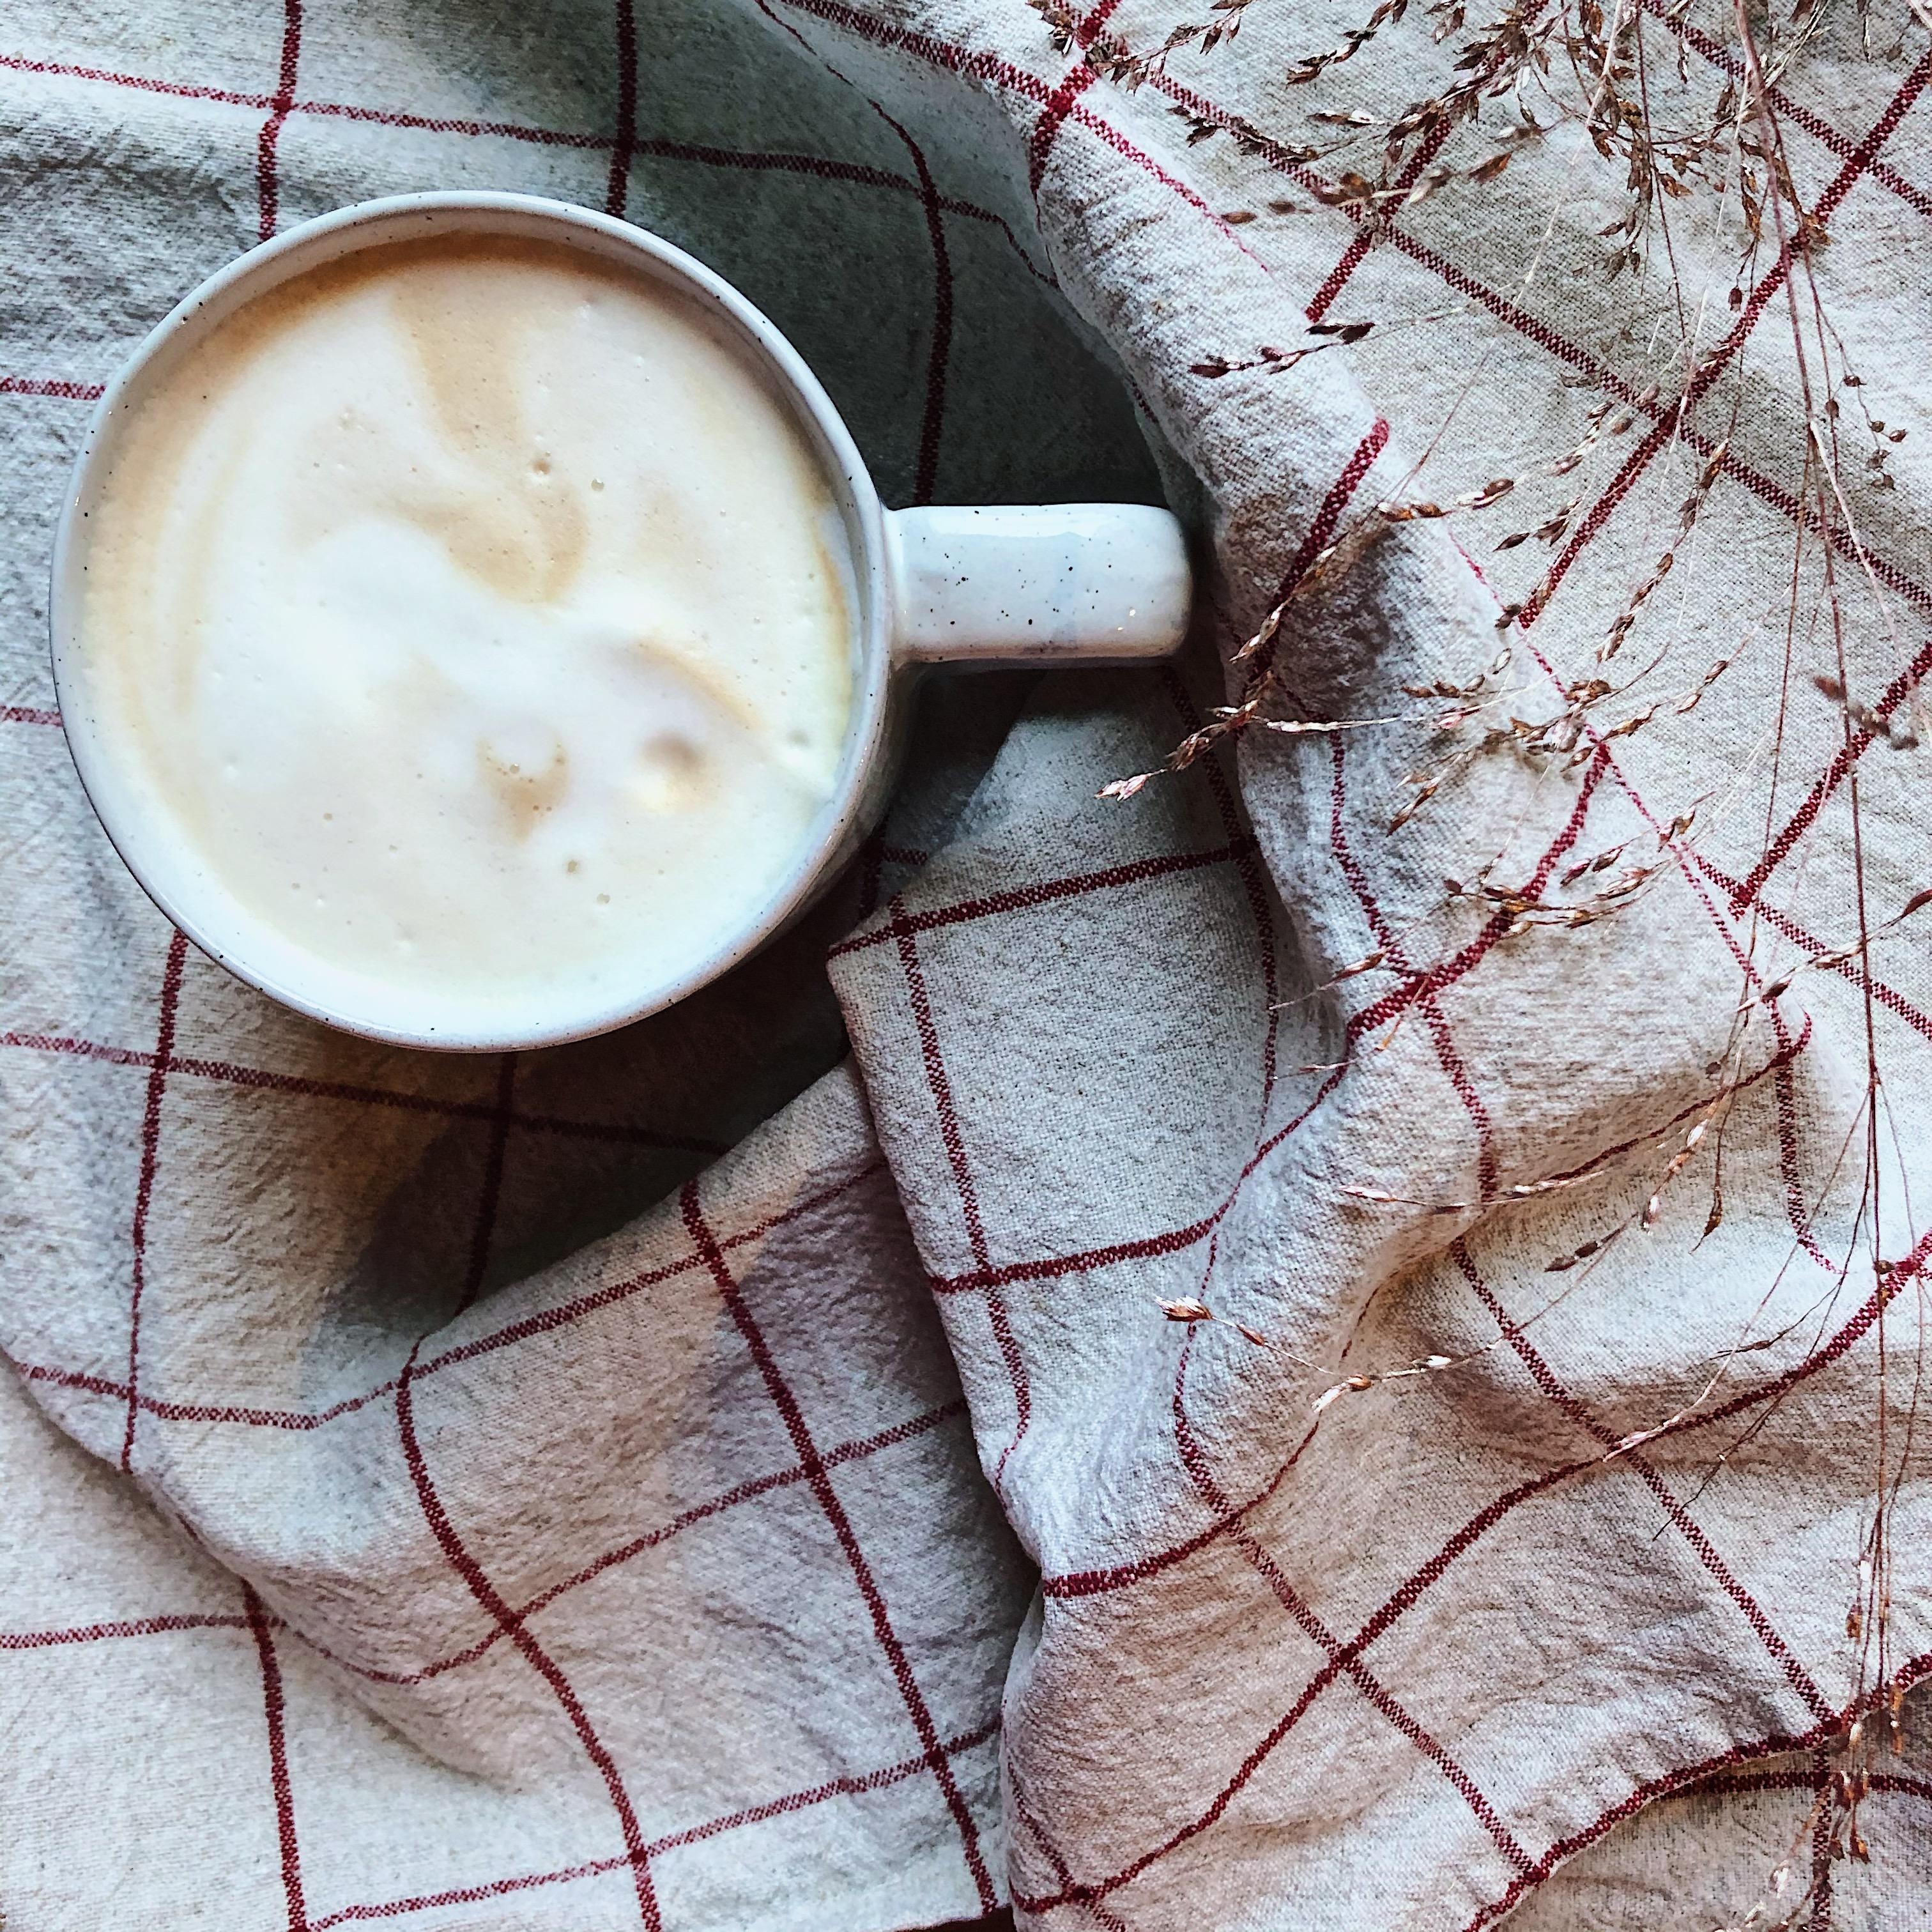 Kaffee vor der Nase, Buch in der Hand, Blick auf das Schneegestöber... gemütlicher wird’s nicht.
#Kaffee #Coffee